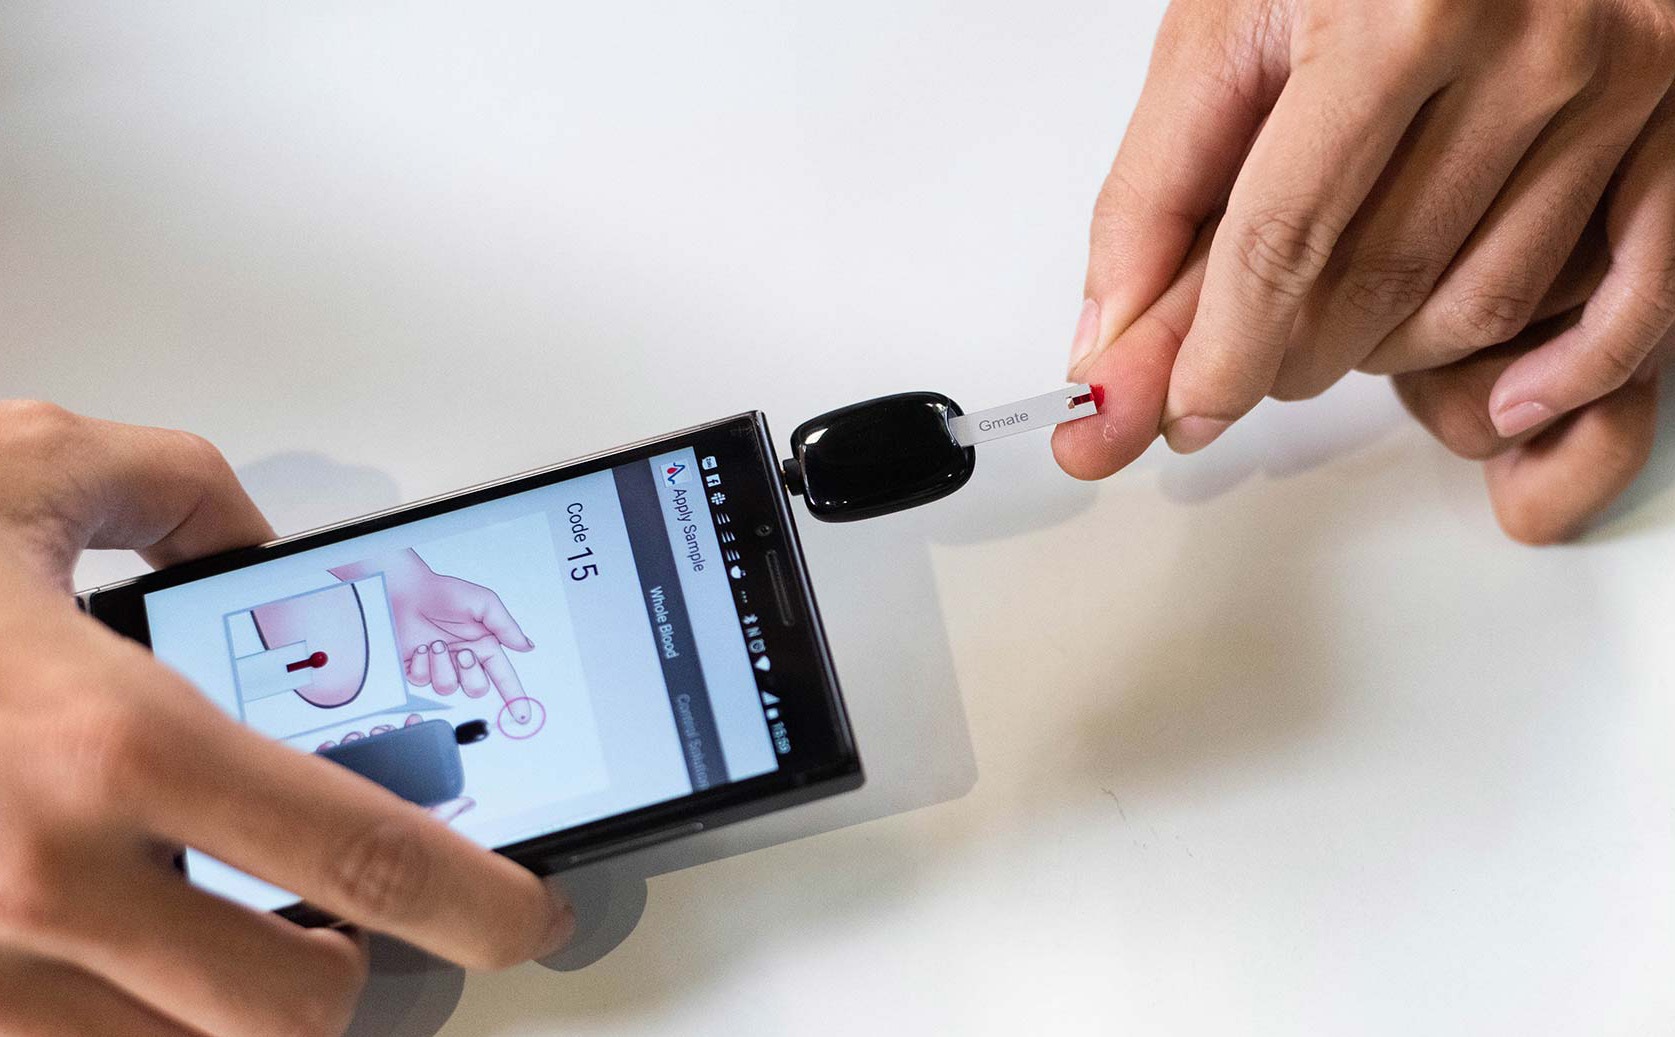 Trên tay máy đo đường huyết bằng smartphone Gmate Smart: gọn, dễ dùng và tiện lợi